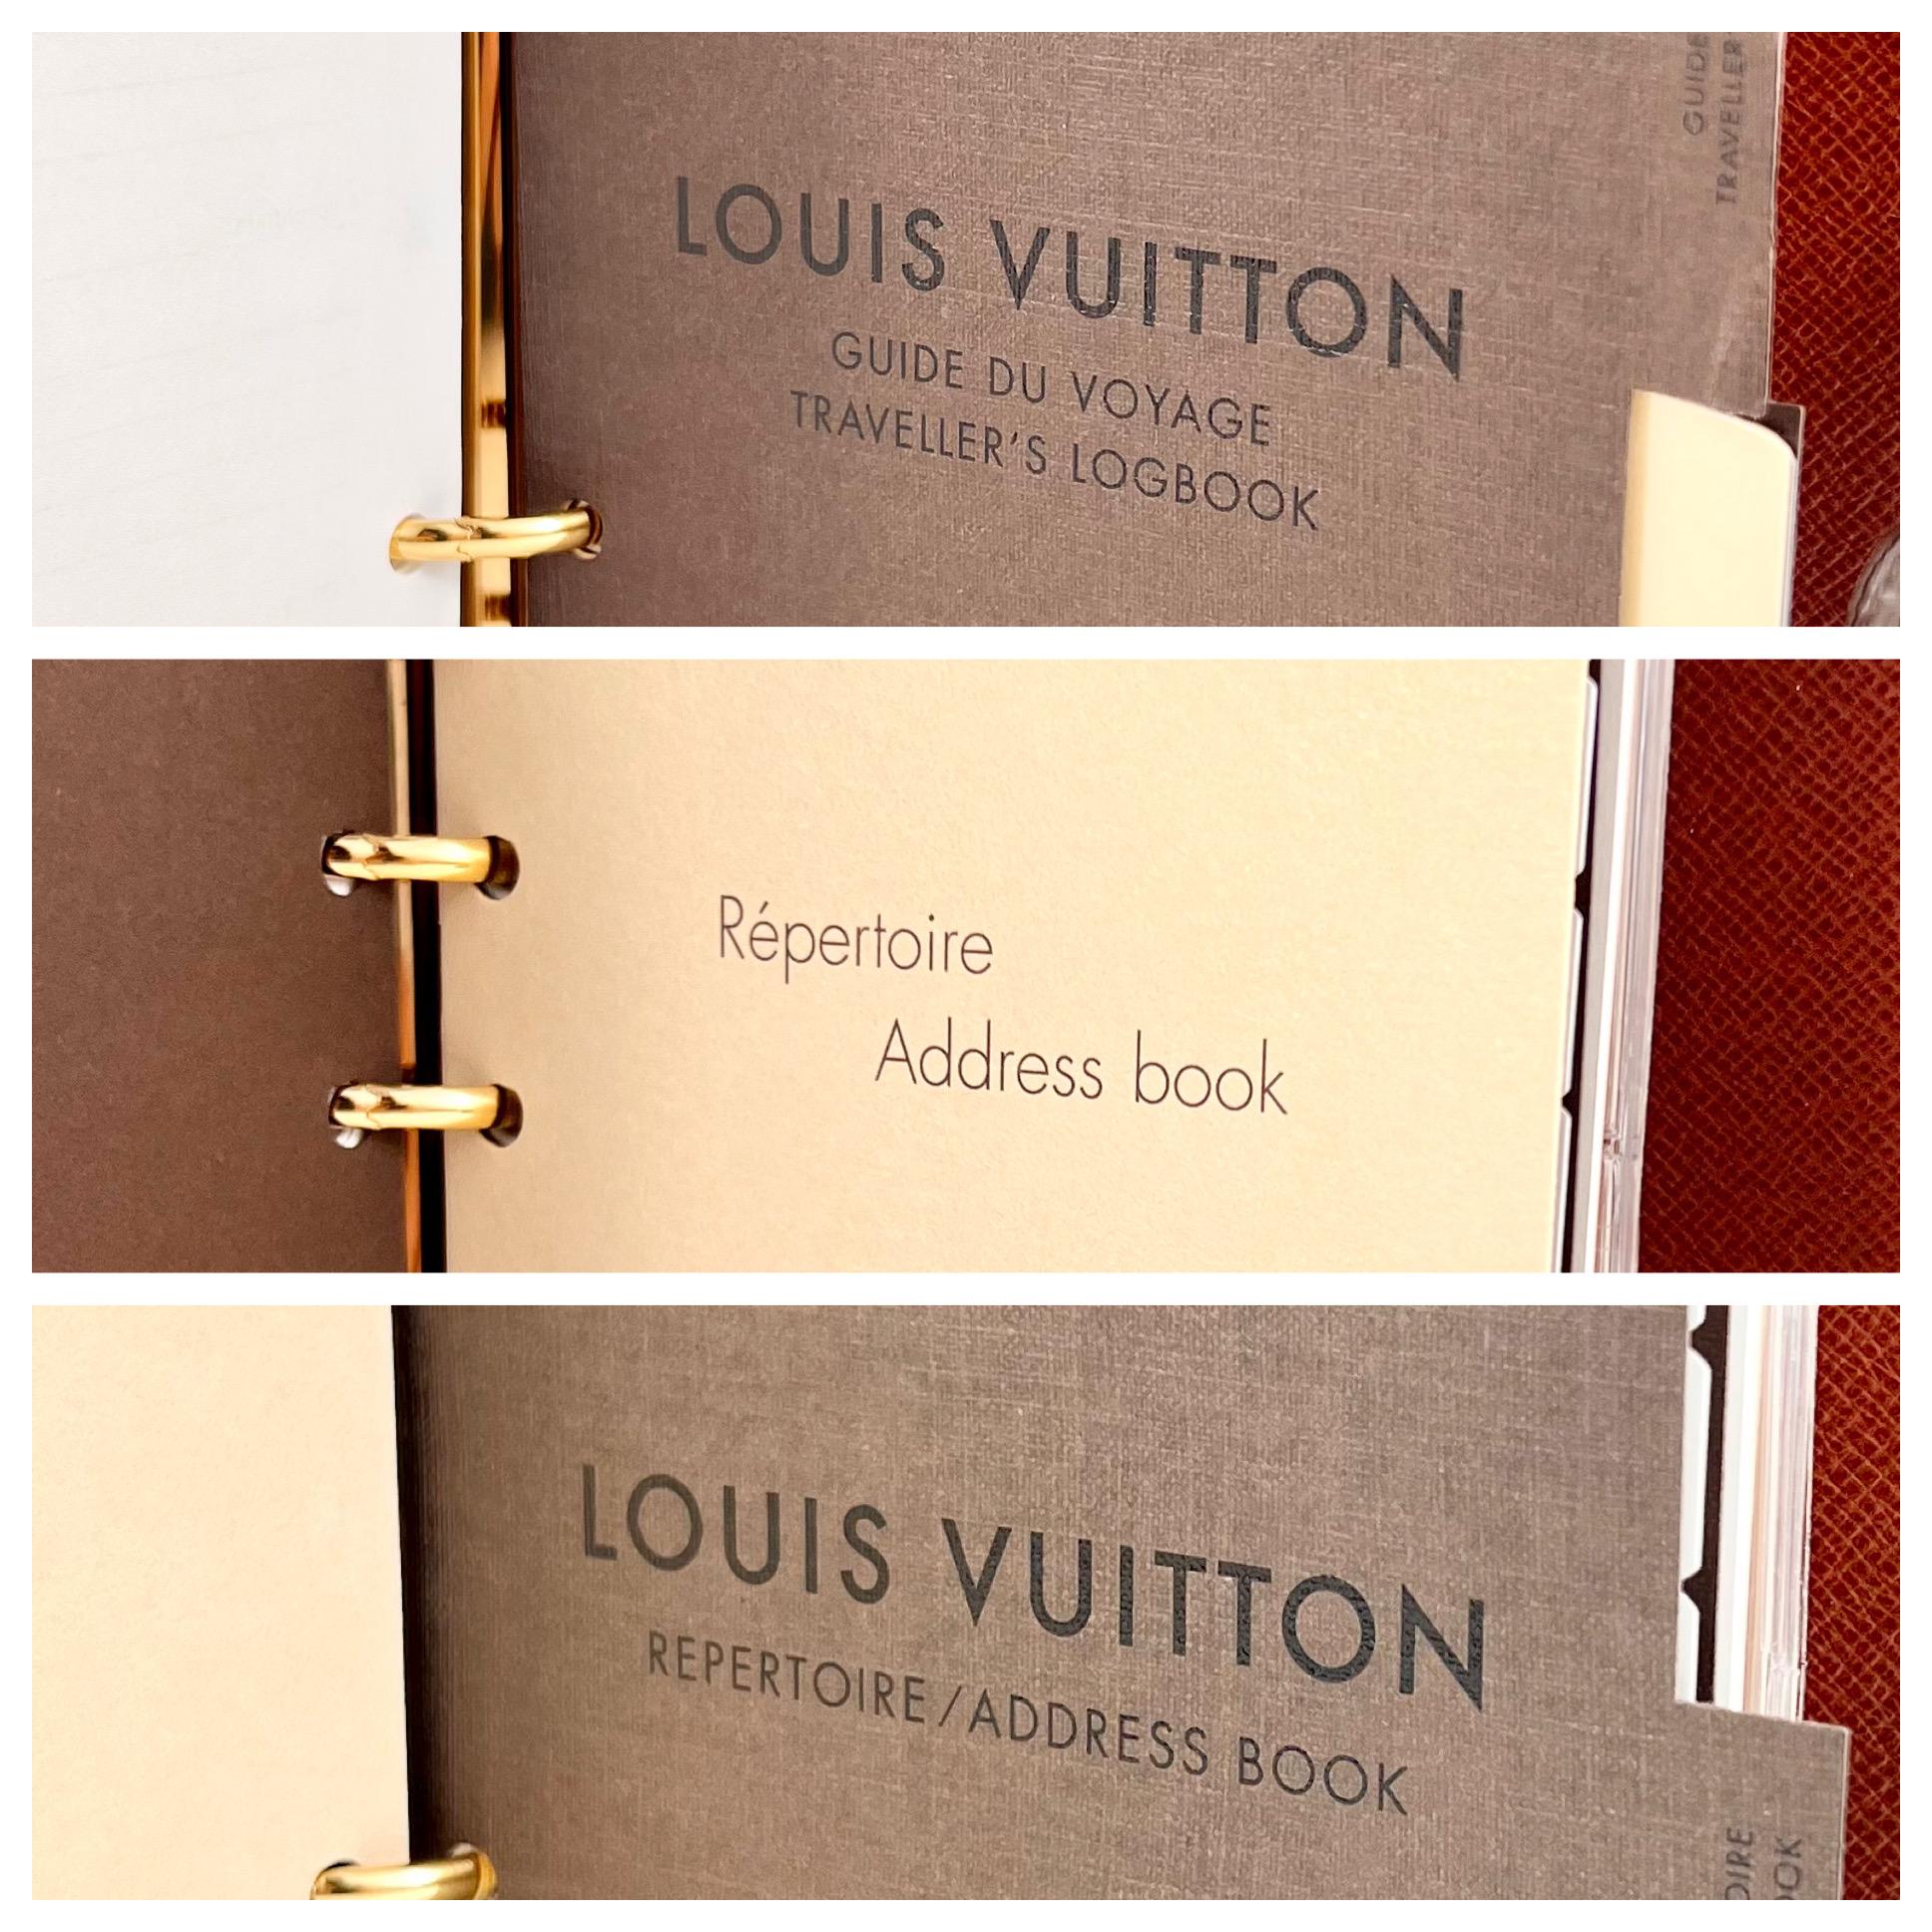 ITEM 13 - Louis Vuitton Agenda Cover MM Monogram - THE PURSE AFFAIR